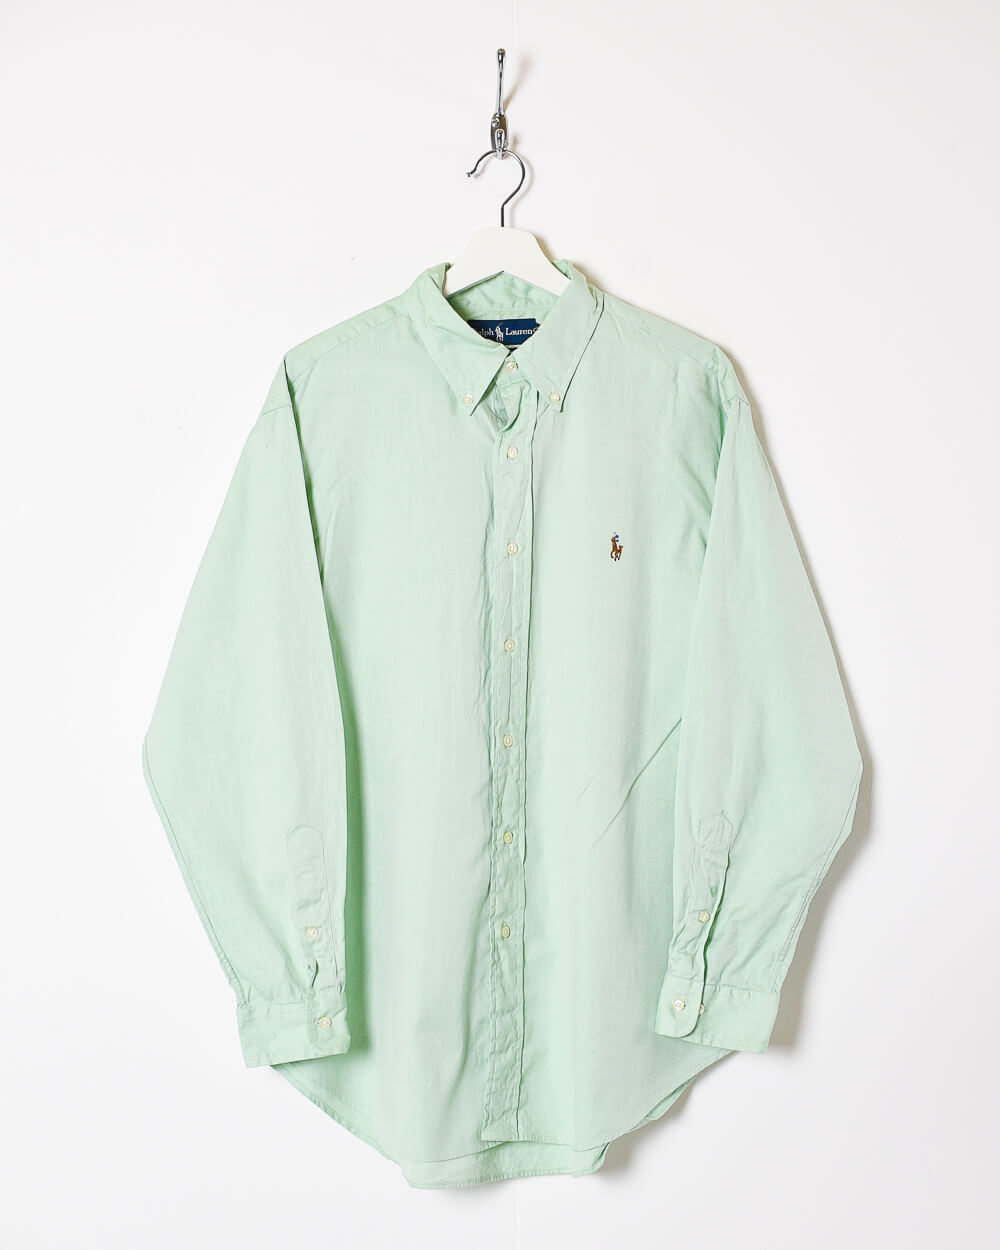 Green Ralph Lauren Shirt - Large